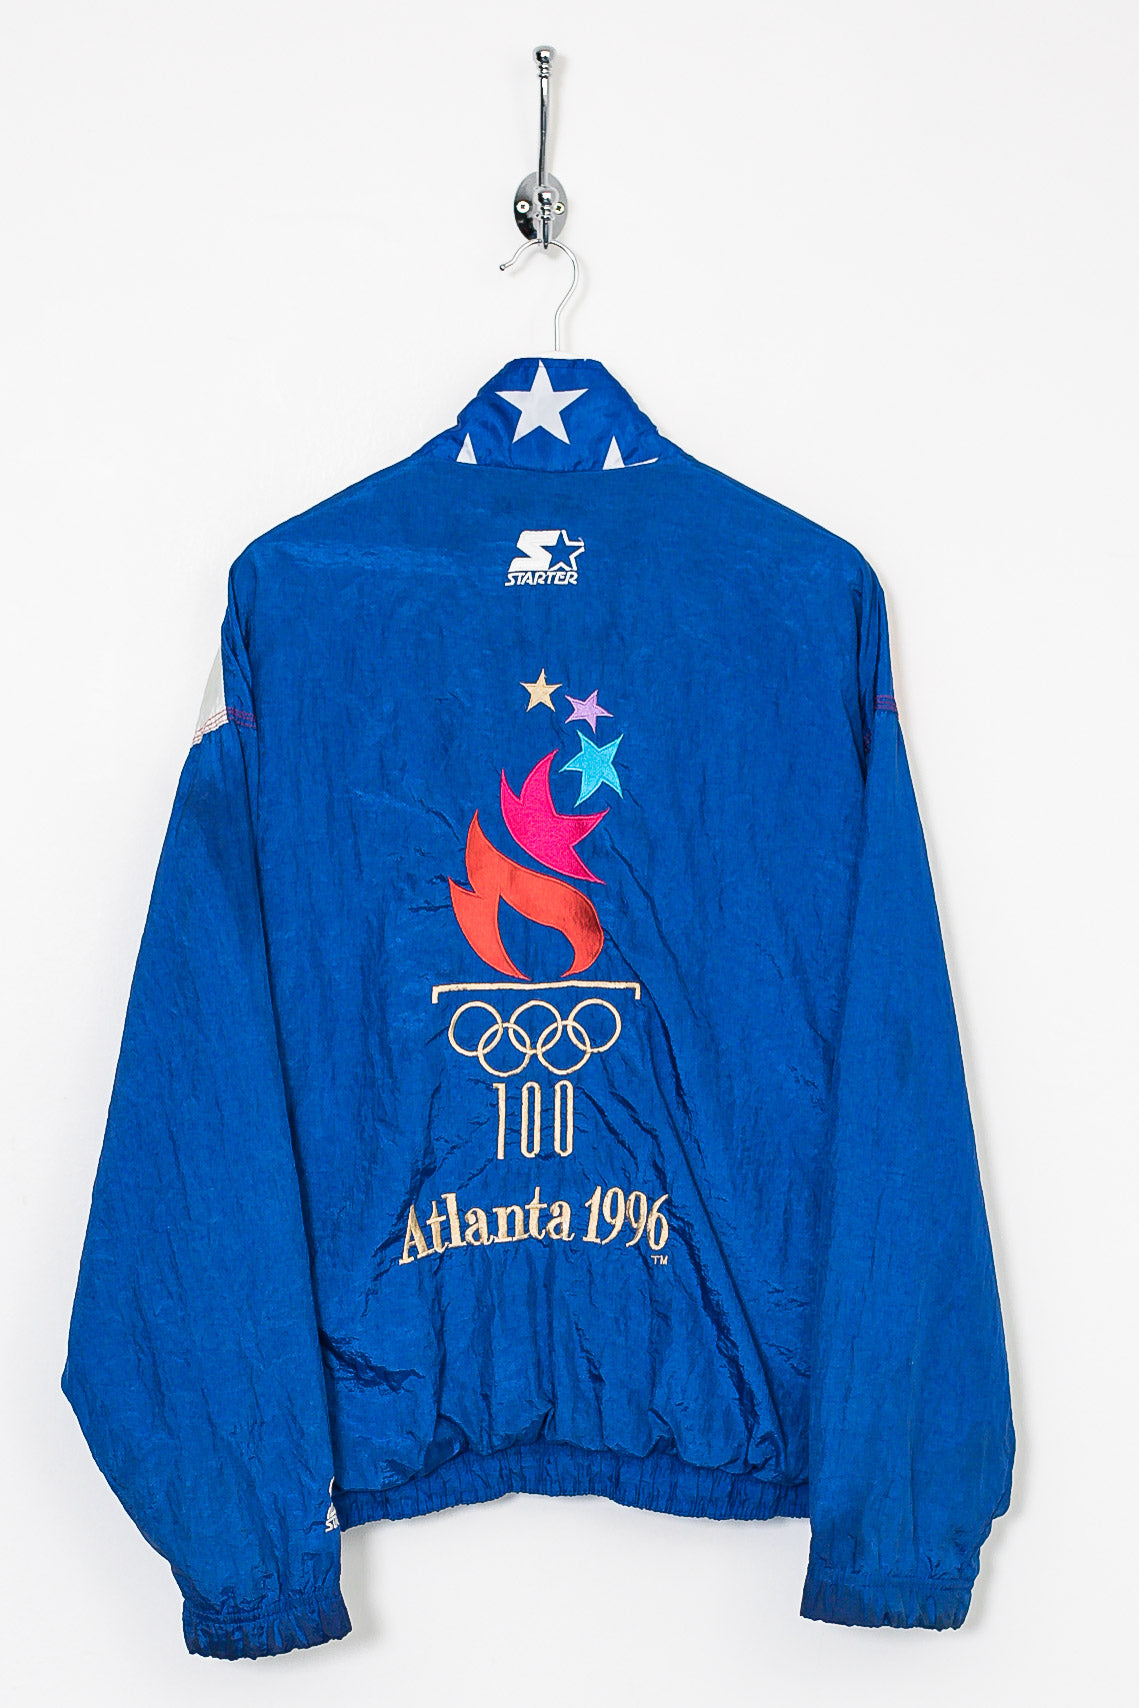 Starter 1996 Atlanta Olympics Jacket (S)